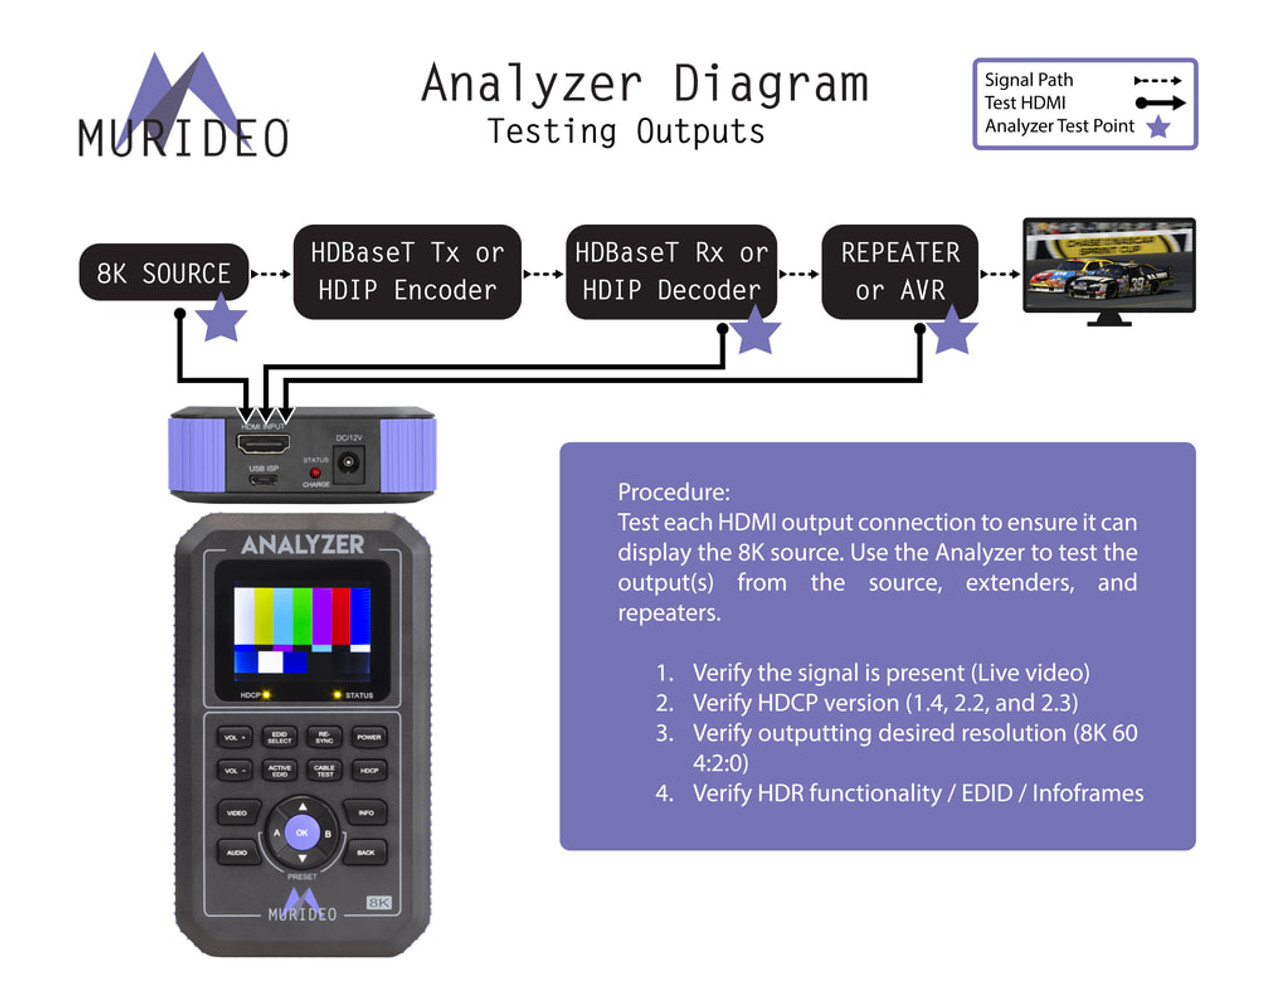 AVPro Edge Murideo 8K HDMI 2.1 Fox & Hound Generator and Analyser Testing Kit